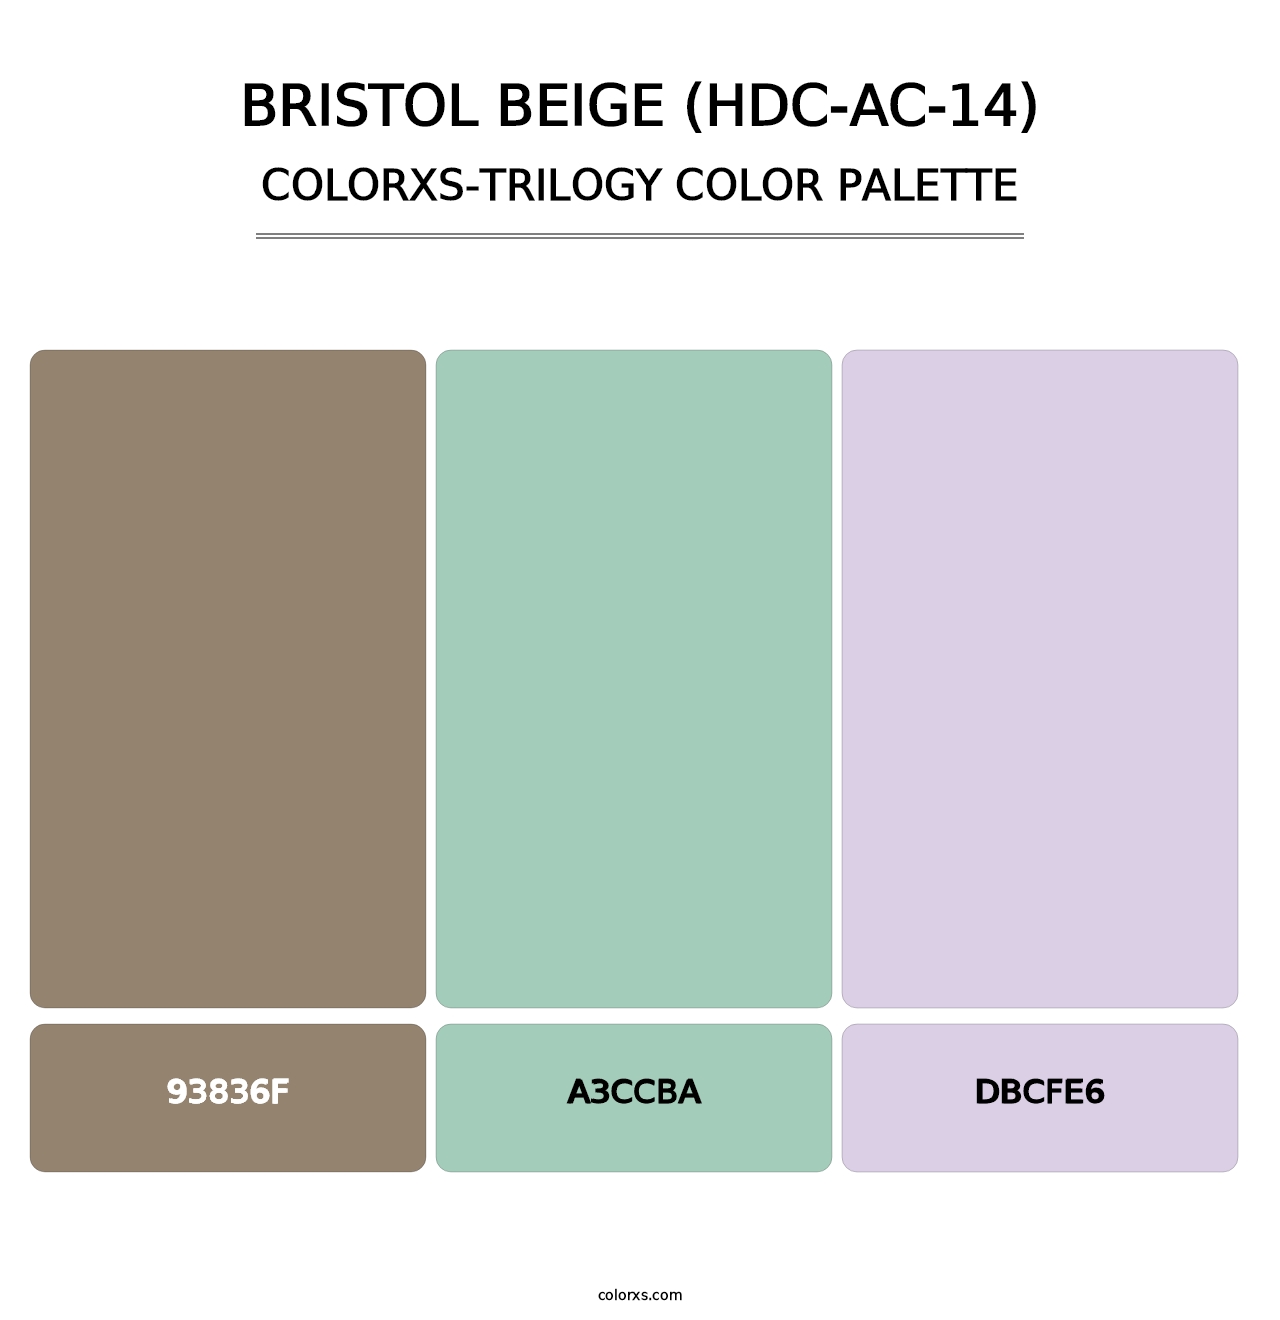 Bristol Beige (HDC-AC-14) - Colorxs Trilogy Palette